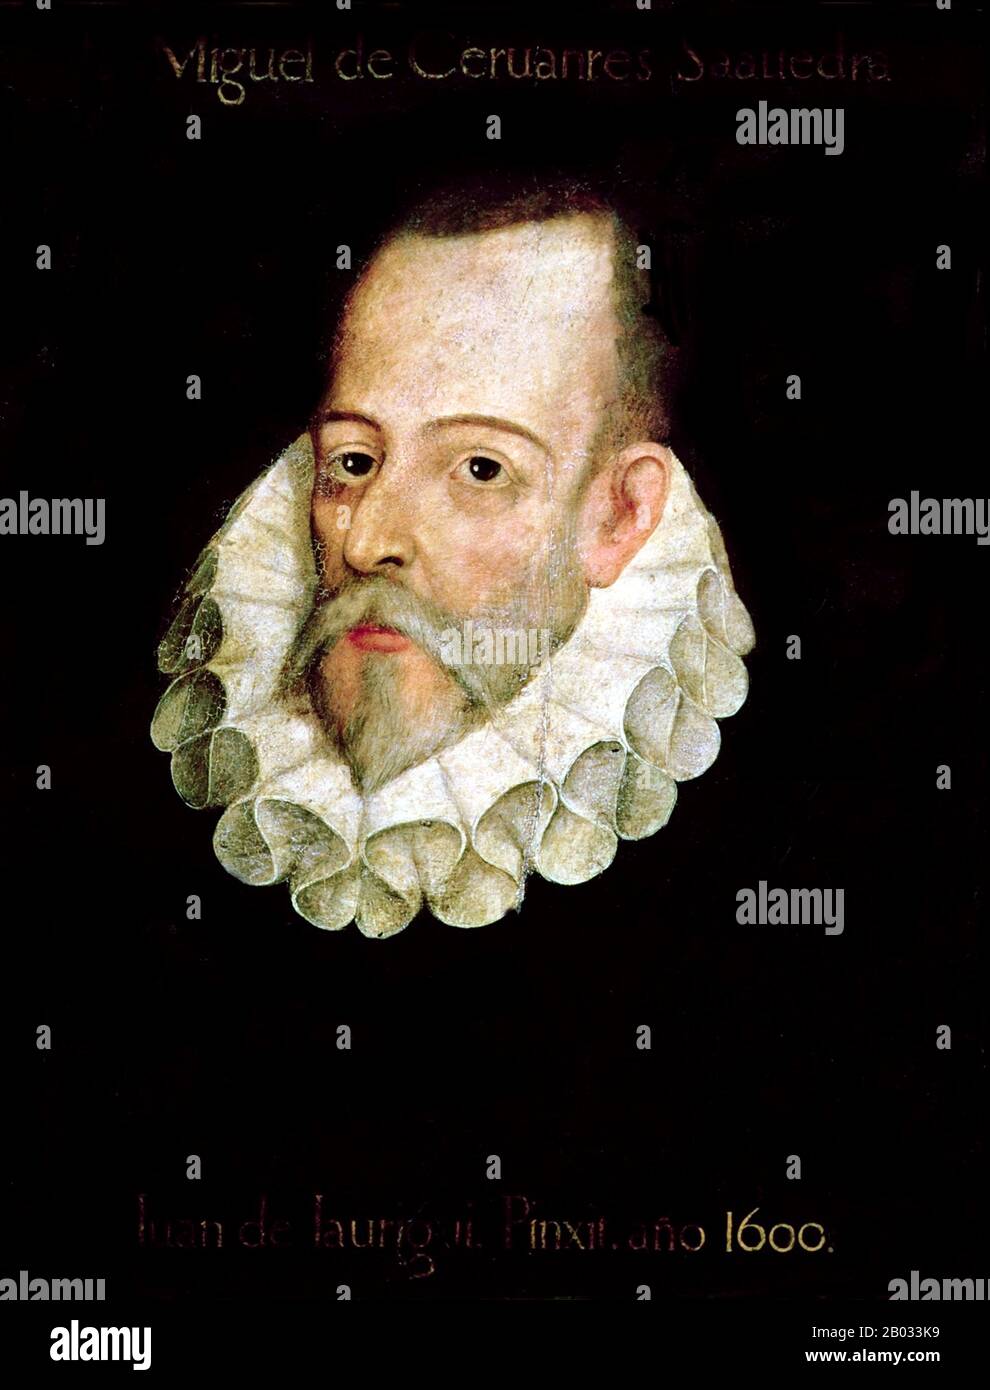 Miguel de Cervantes (29 septembre 1547 – 22 avril 1616) est largement considéré comme le plus grand écrivain de langue espagnole et l'un des romanciers prééminents du monde. Son travail majeur, Don Quichote, considéré comme le premier roman européen moderne, est un classique de la littérature occidentale, et est considéré parmi les meilleures œuvres de fiction jamais écrites. Son influence sur la langue espagnole a été si grande que la langue est parfois appelée la lengua de Cervantes ('la langue de Cervantes'). Banque D'Images